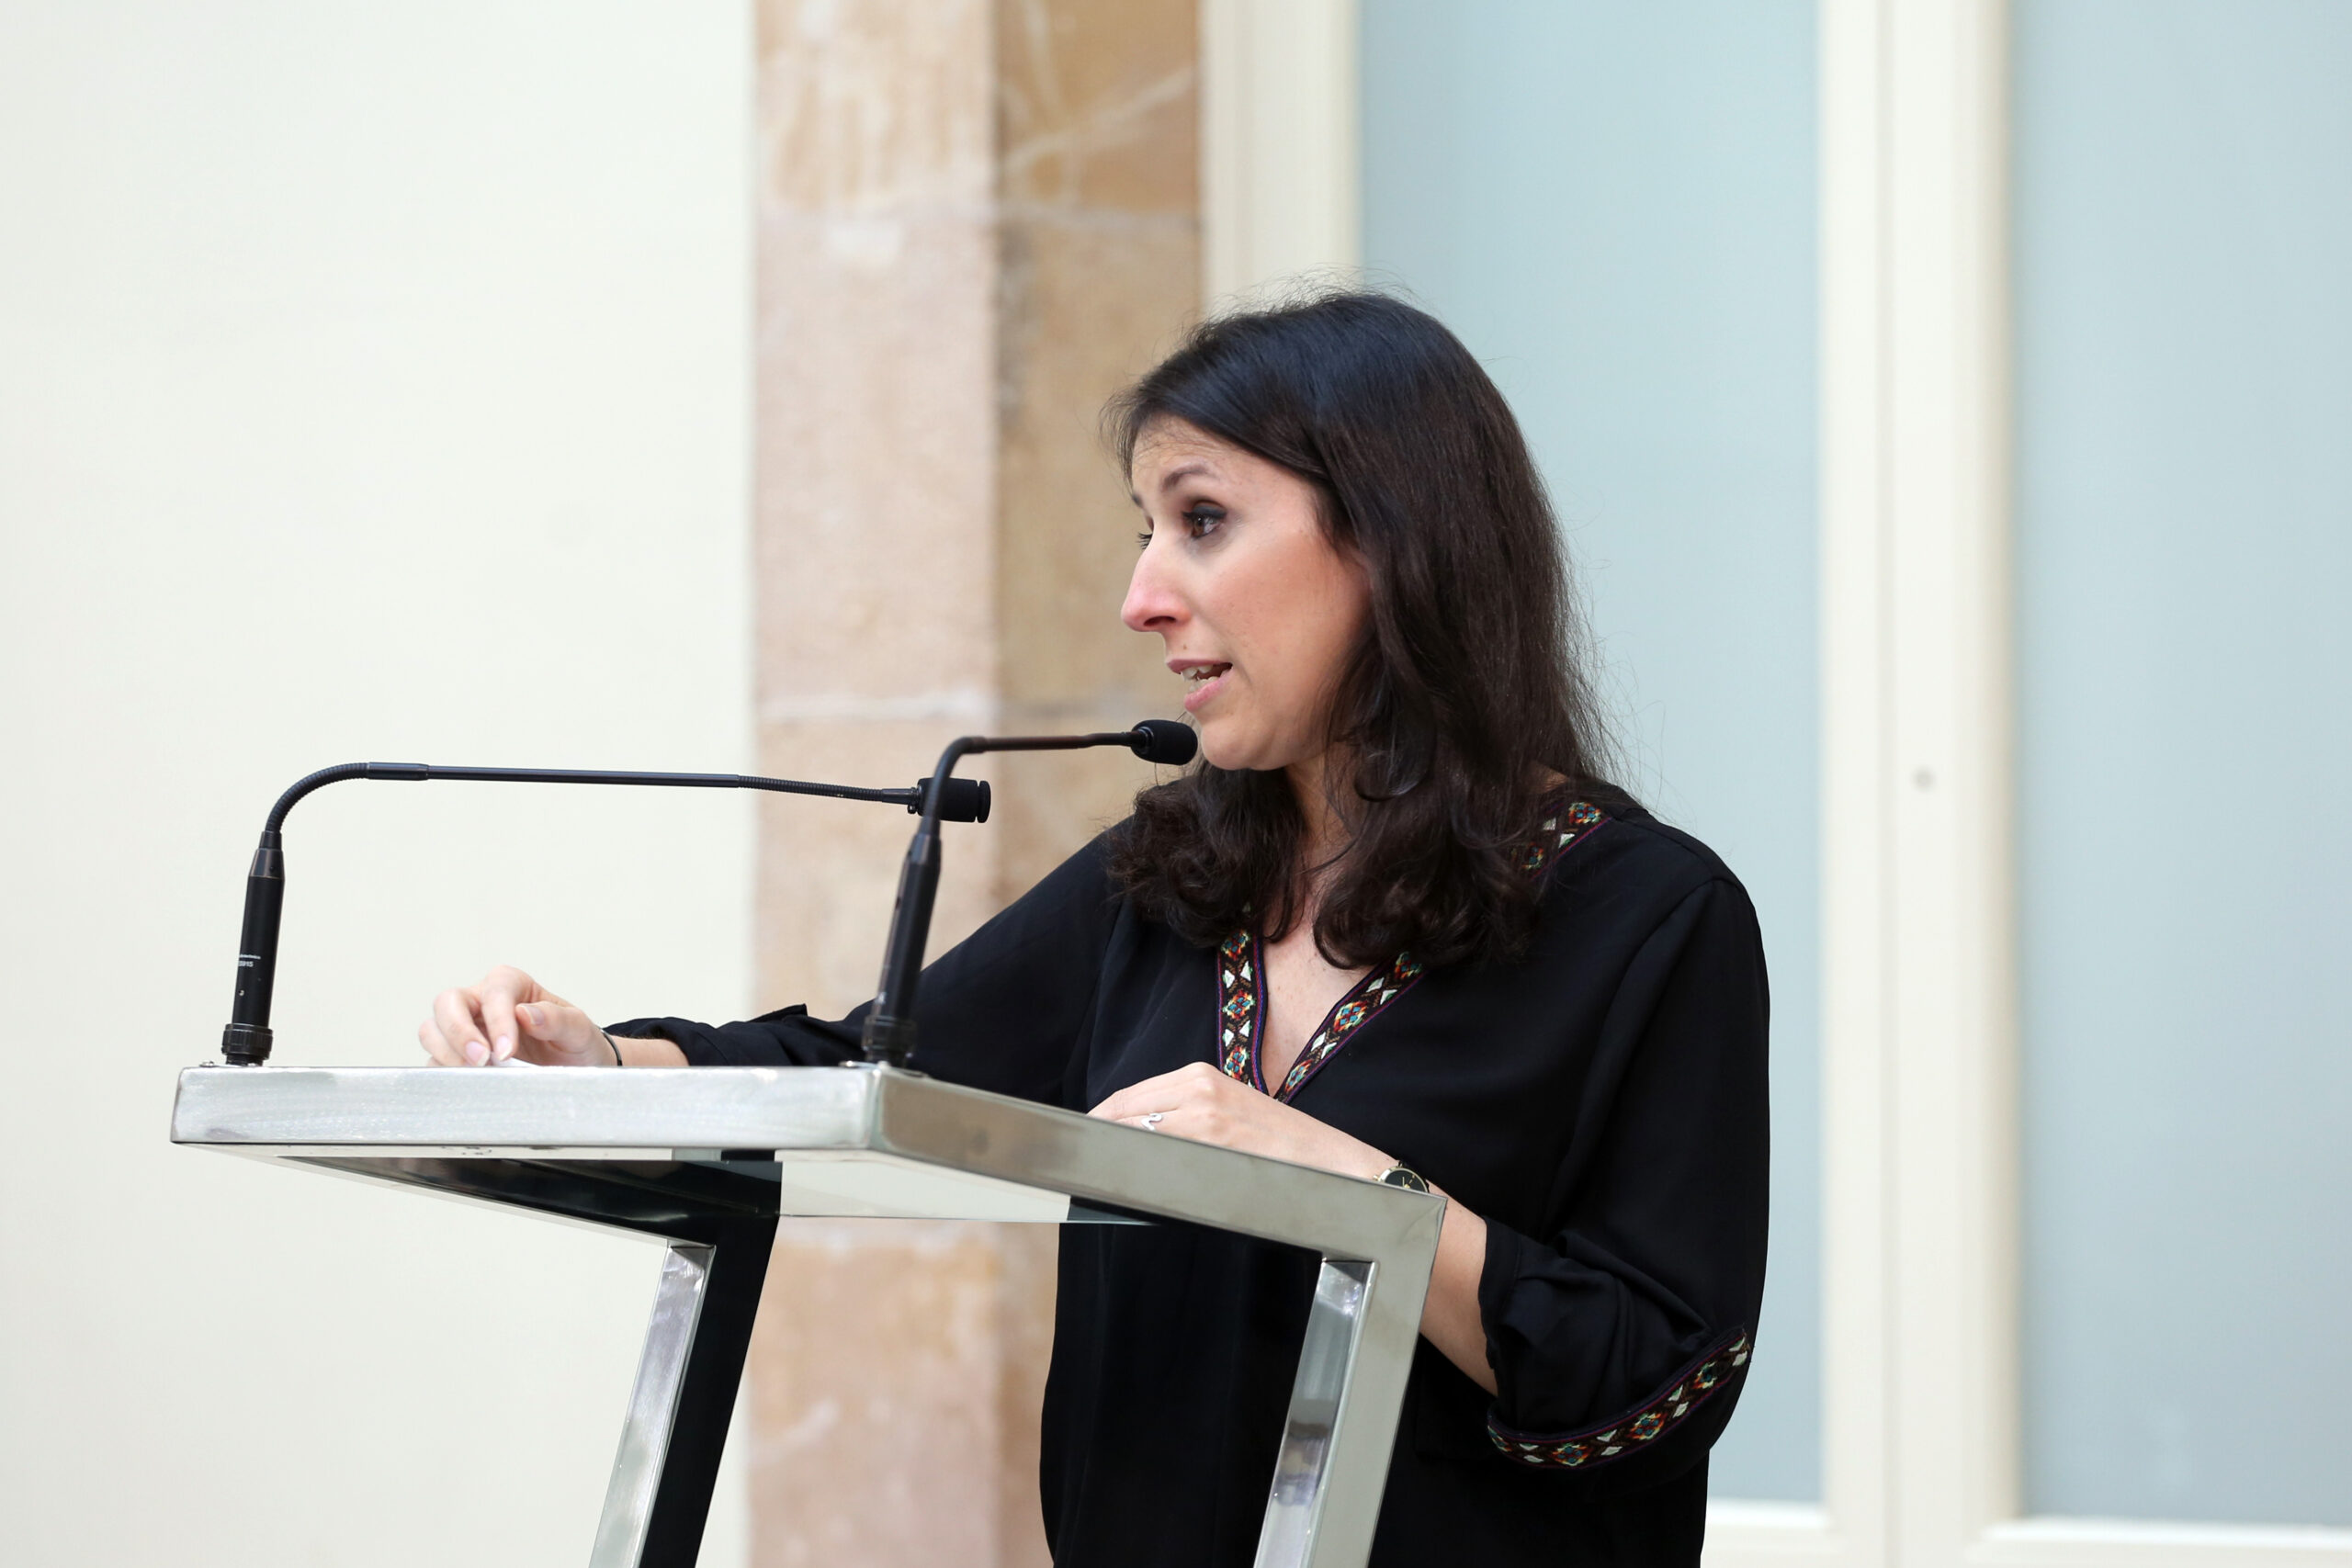 Lliurament del Premi Solidaritat i la menció especial mitjans de comunicació a l’associació Punt de Referència i a la periodista Ana Bernal Triviño